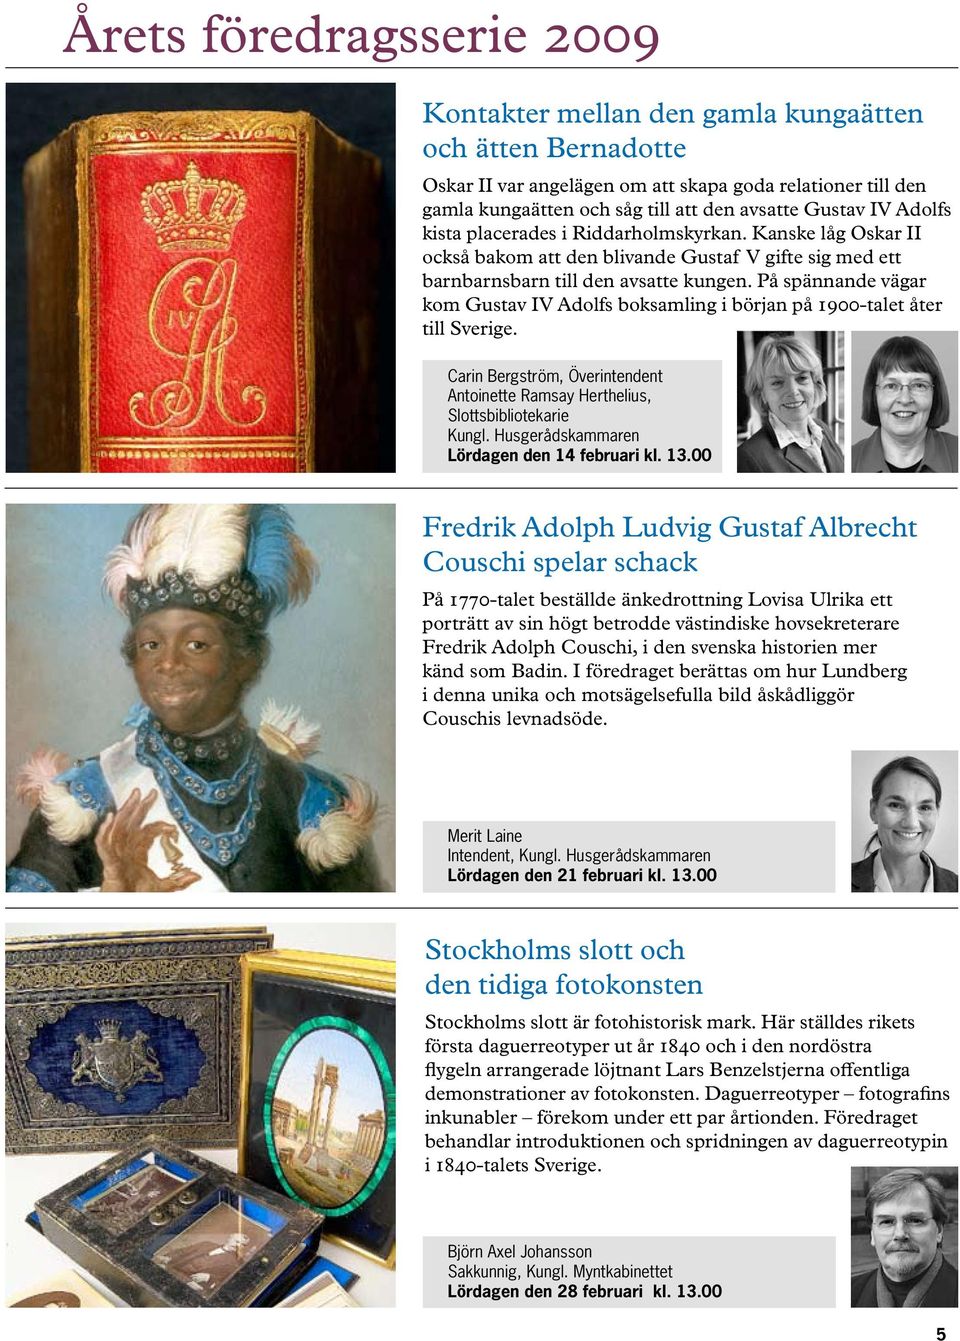 På spännande vägar kom Gustav IV Adolfs boksamling i början på 1900-talet åter till Sverige. Carin Bergström, Överintendent Antoinette Ramsay Herthelius, Slottsbibliotekarie Kungl.